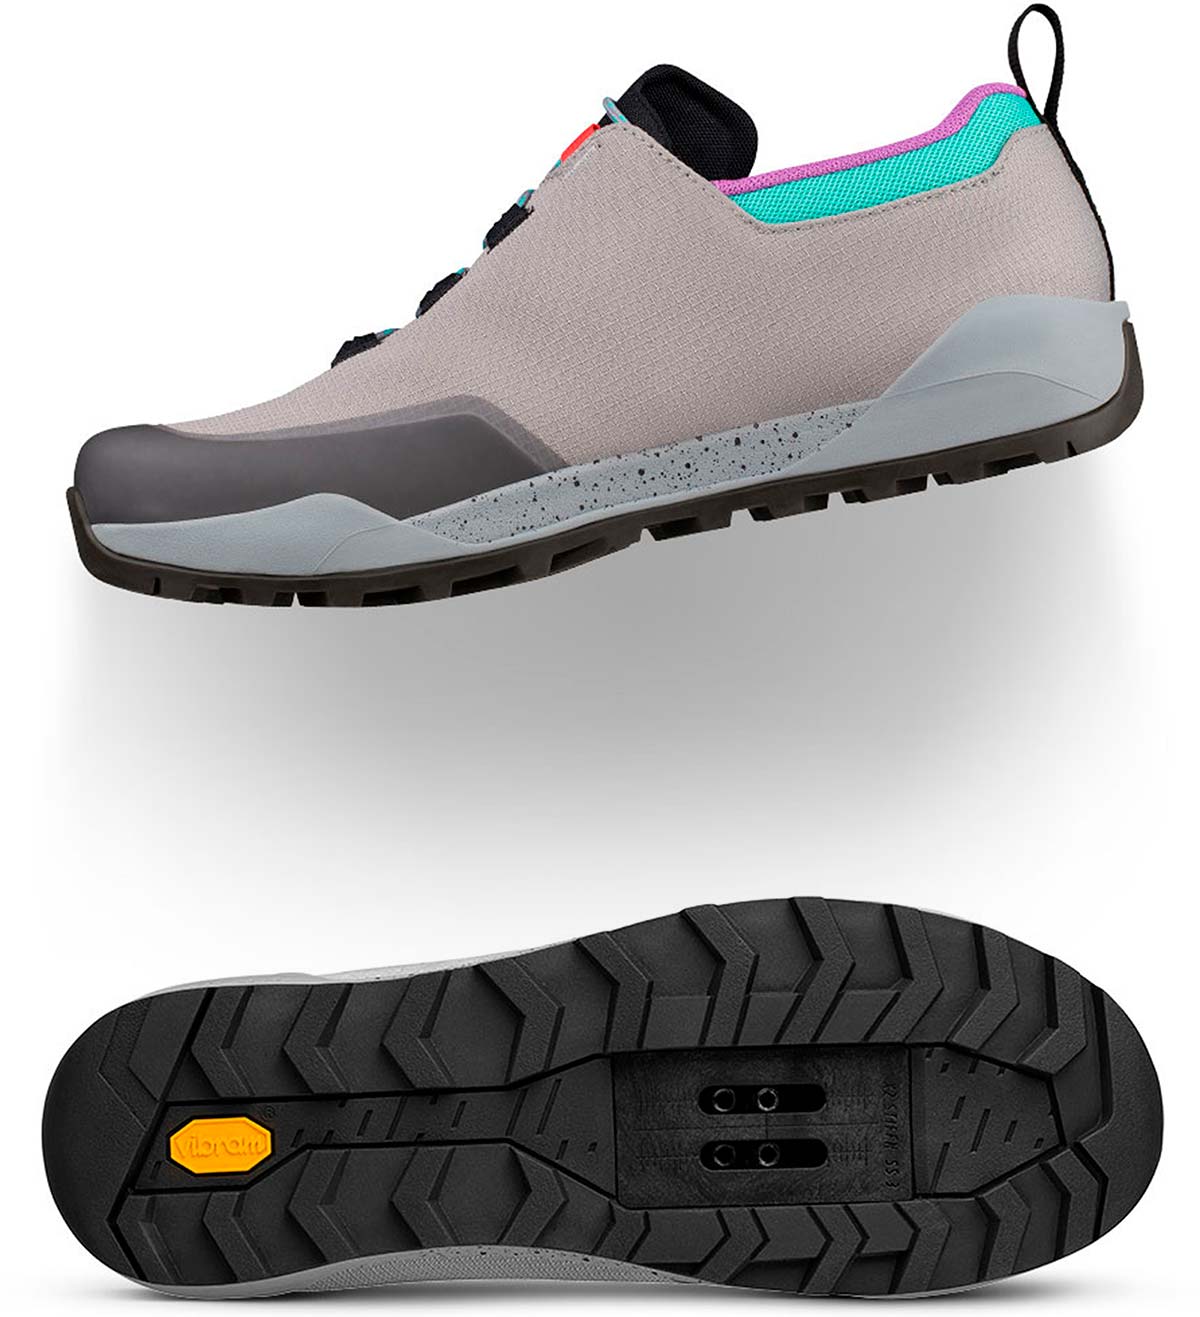 En TodoMountainBike: Fi'zi:k Terra Ergolace X2 90S, unas zapatillas de MTB para los nostálgicos de la década de los 90